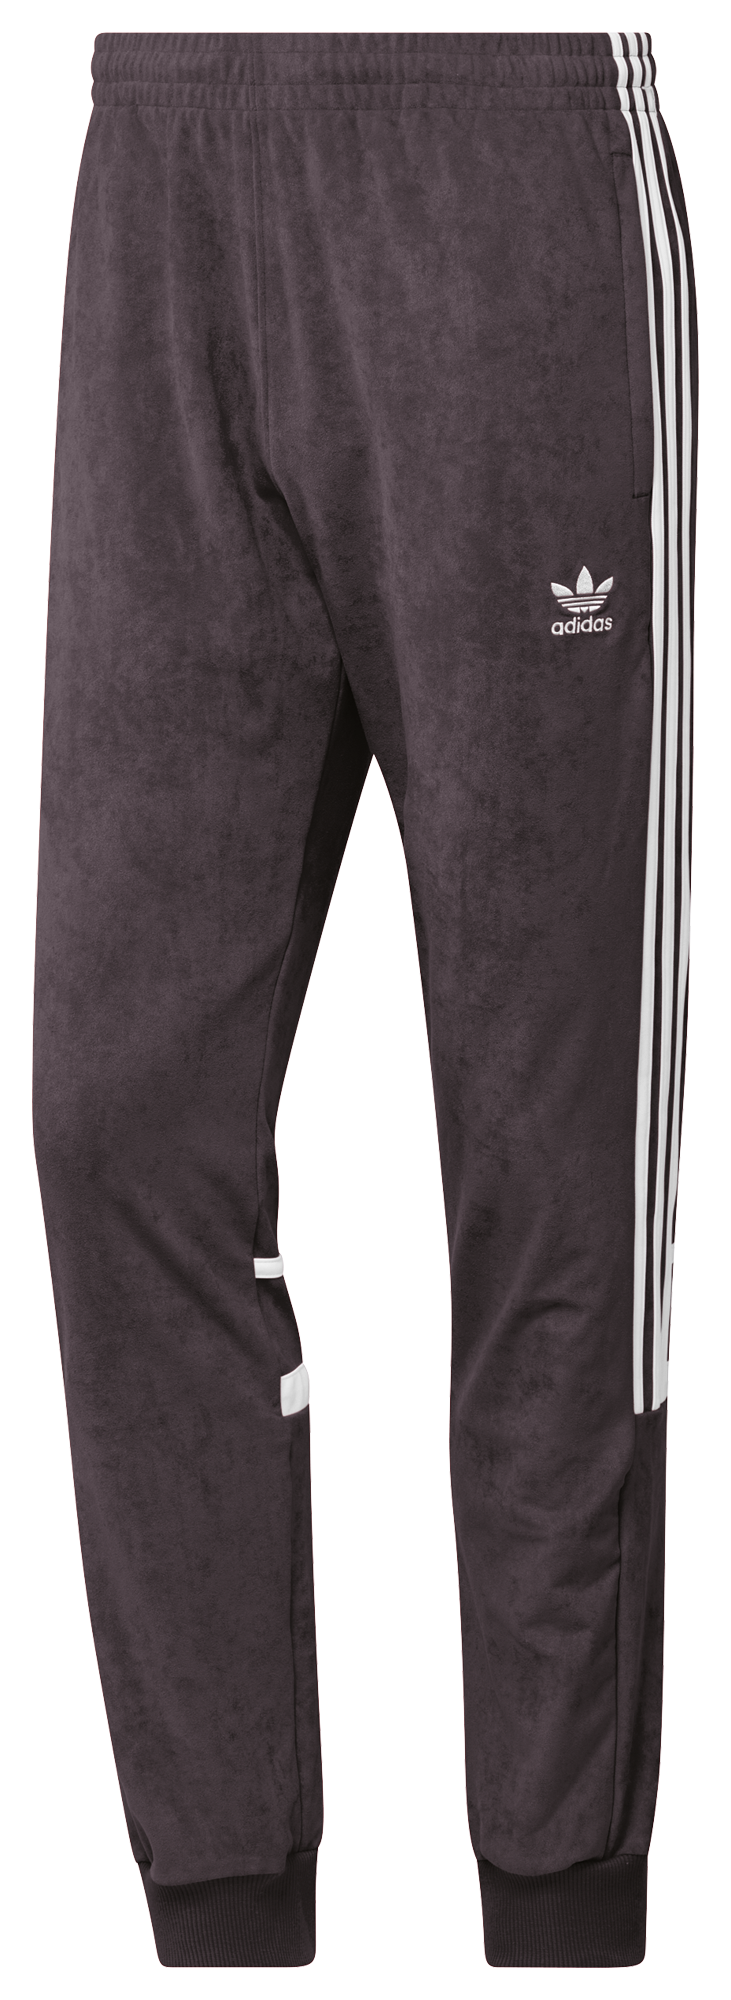 adidas Originals Adicolor Classics Plush Track Pants - Men's